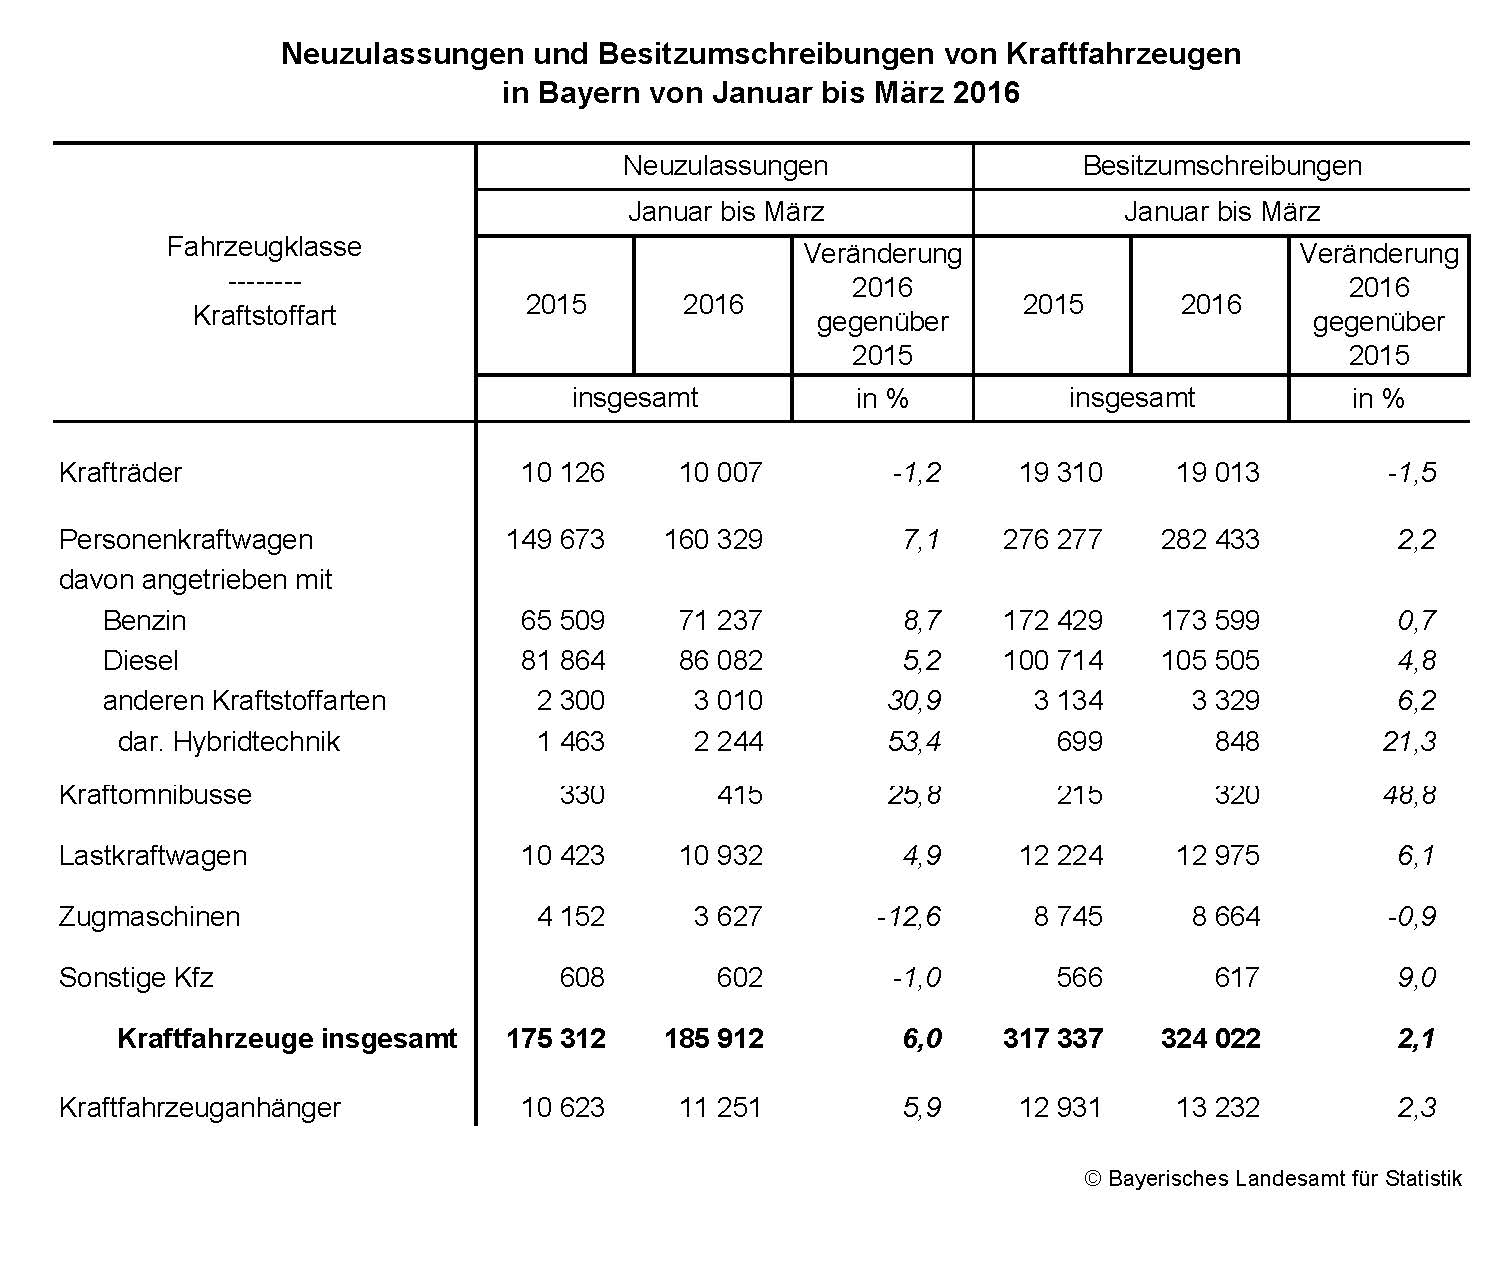 Neuzulassungen und Besitzumschreibungen von Kraftfahrzeugen in Bayern von Januar bis März 2016